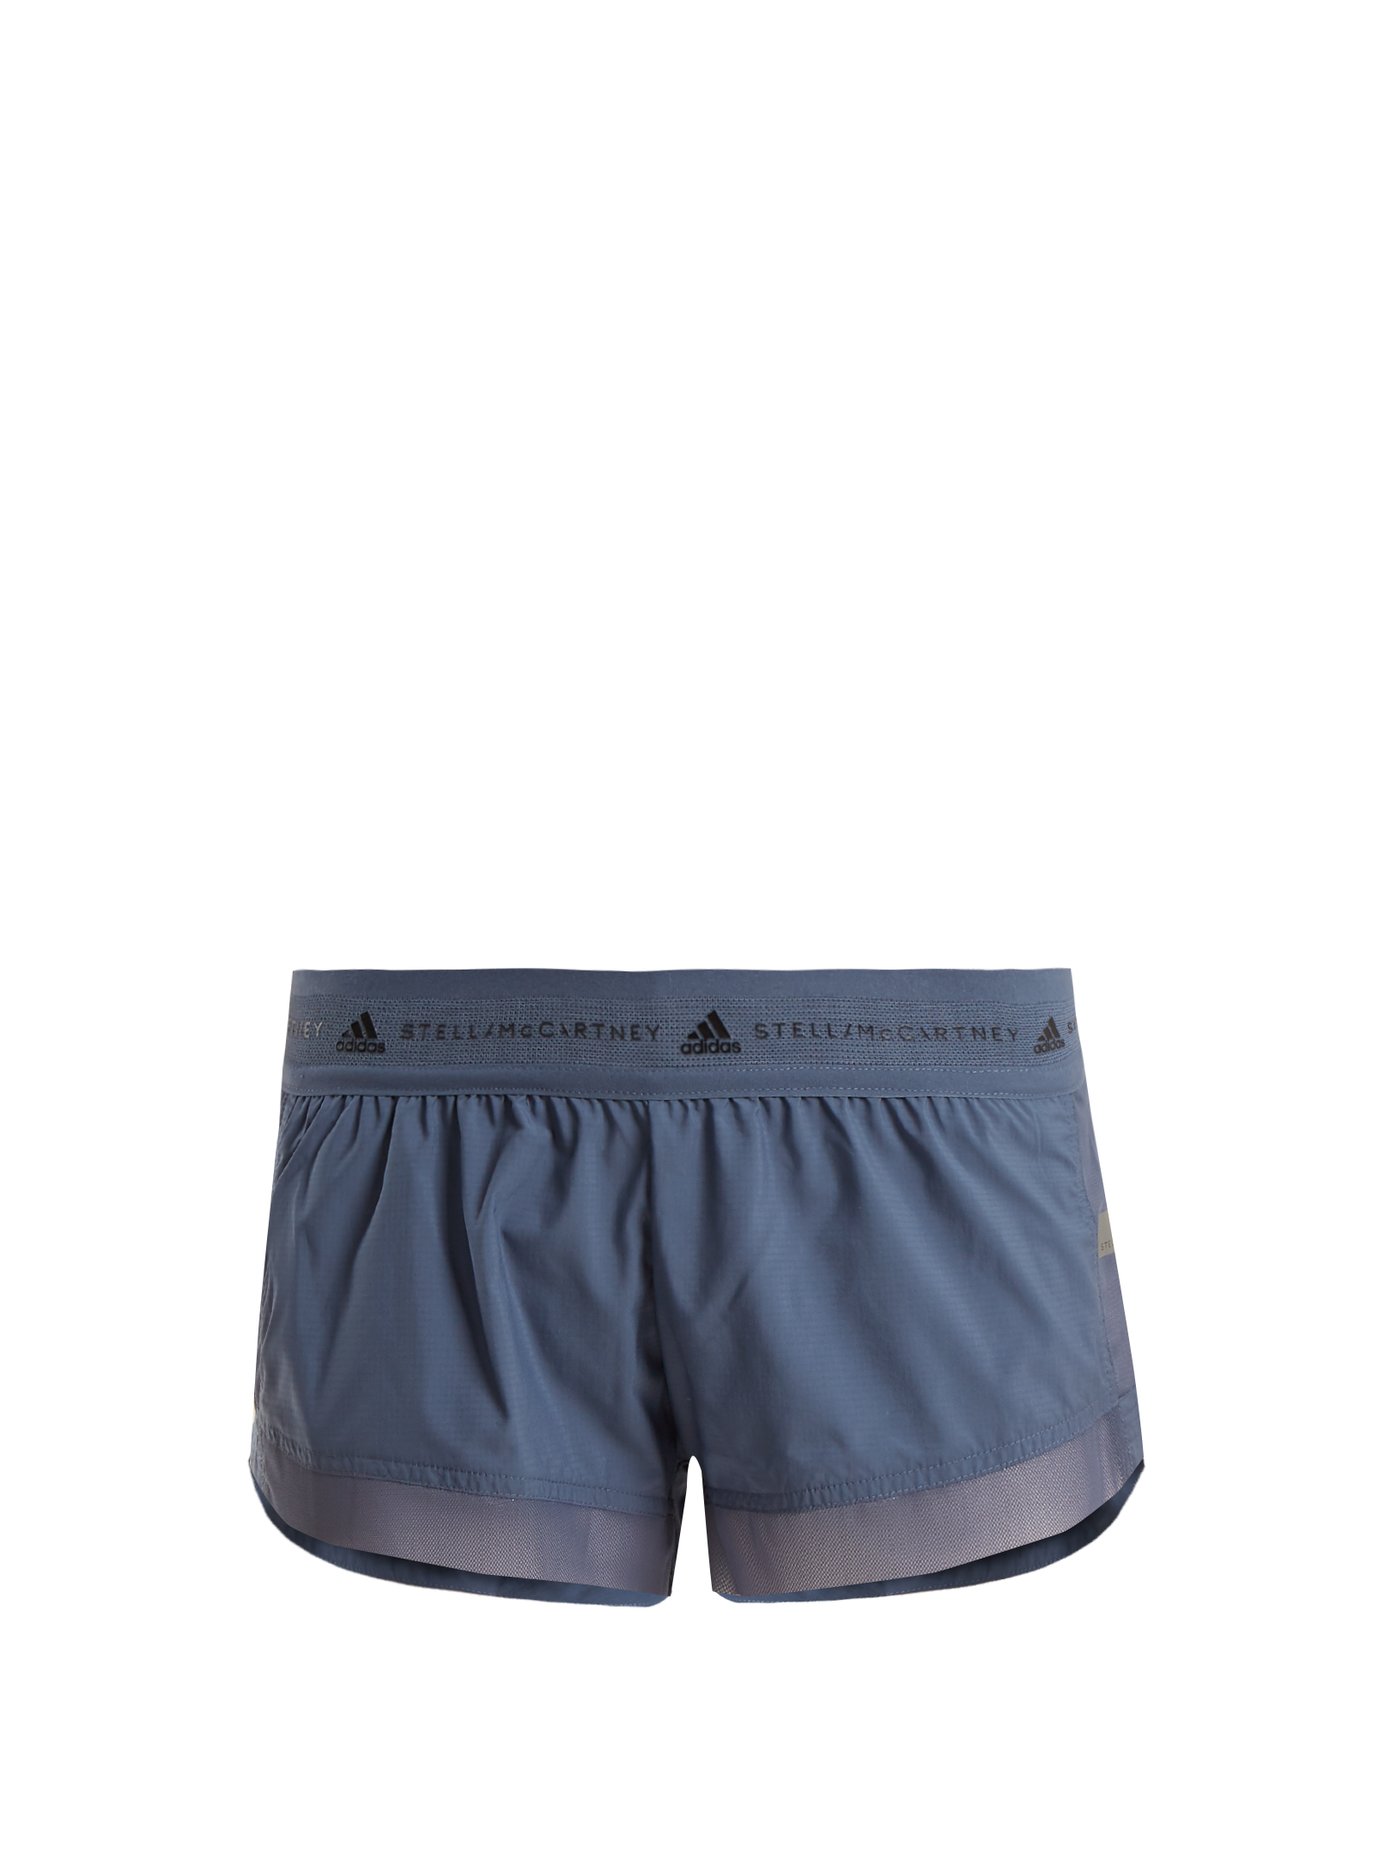 Run Adizero shorts | Adidas By Stella 